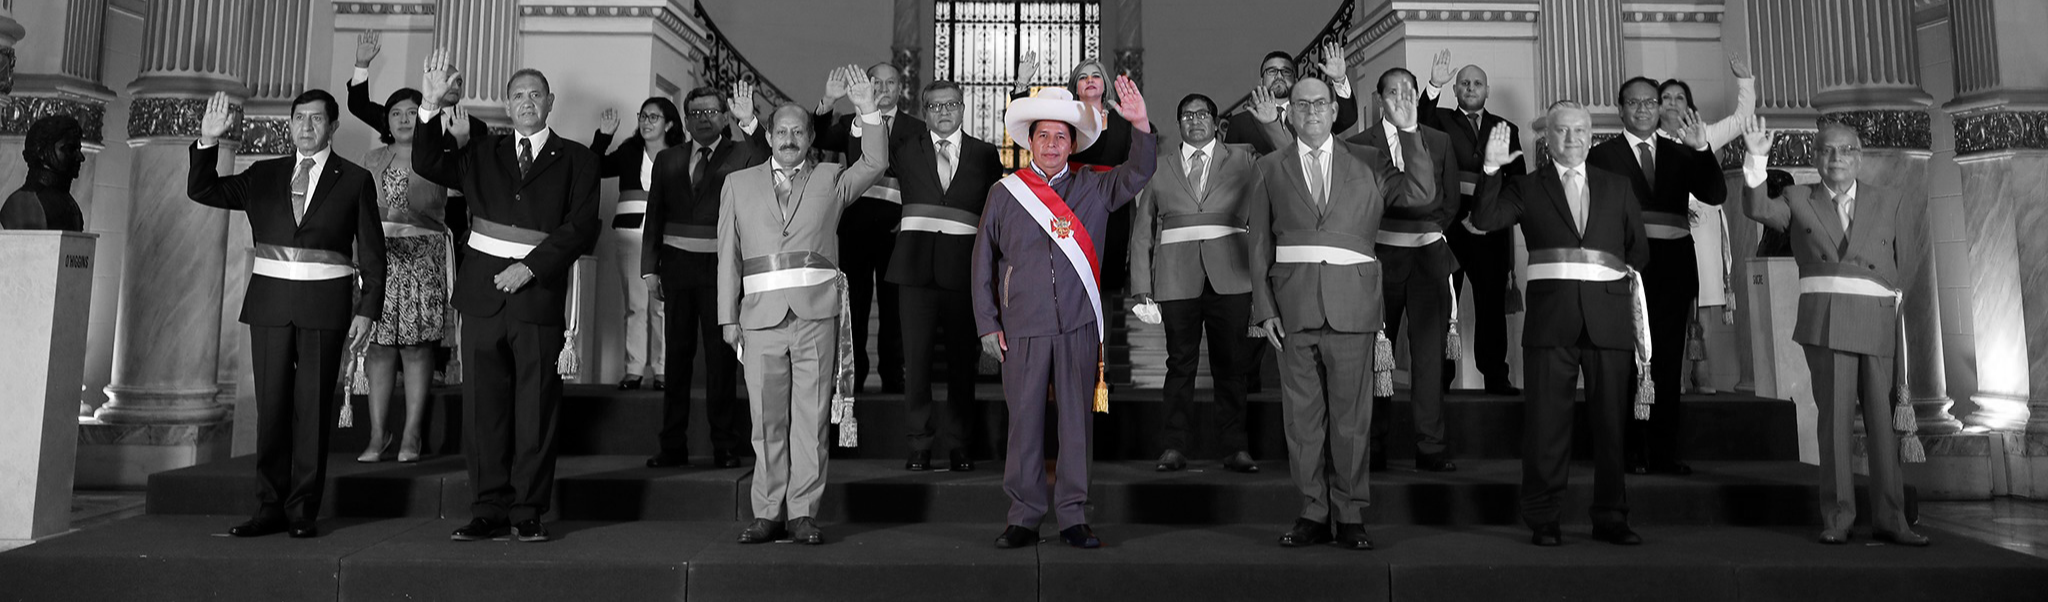 Em 18 meses, Congresso peruano só aprovou leis sem relevância econômica e social